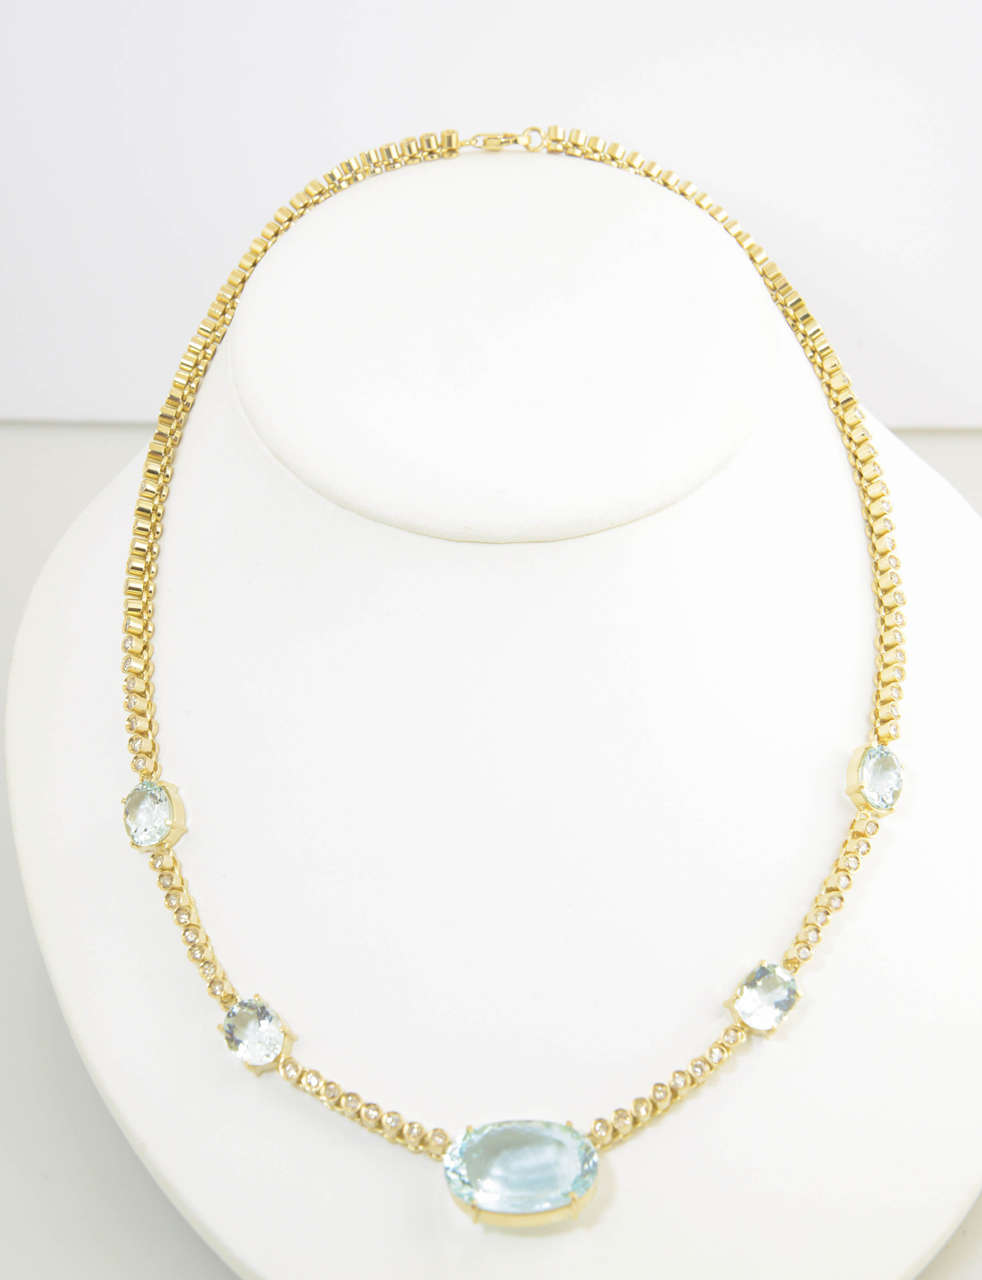 Halskette mit eingefassten Diamanten und 5 mit Zacken versehenen Aquamarinen in 18 Karat Gold. Das größte Aqua ist 3/4